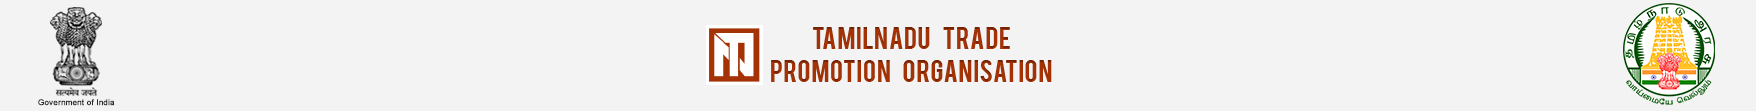 Tamil Nadu Trade Promotion Organisation